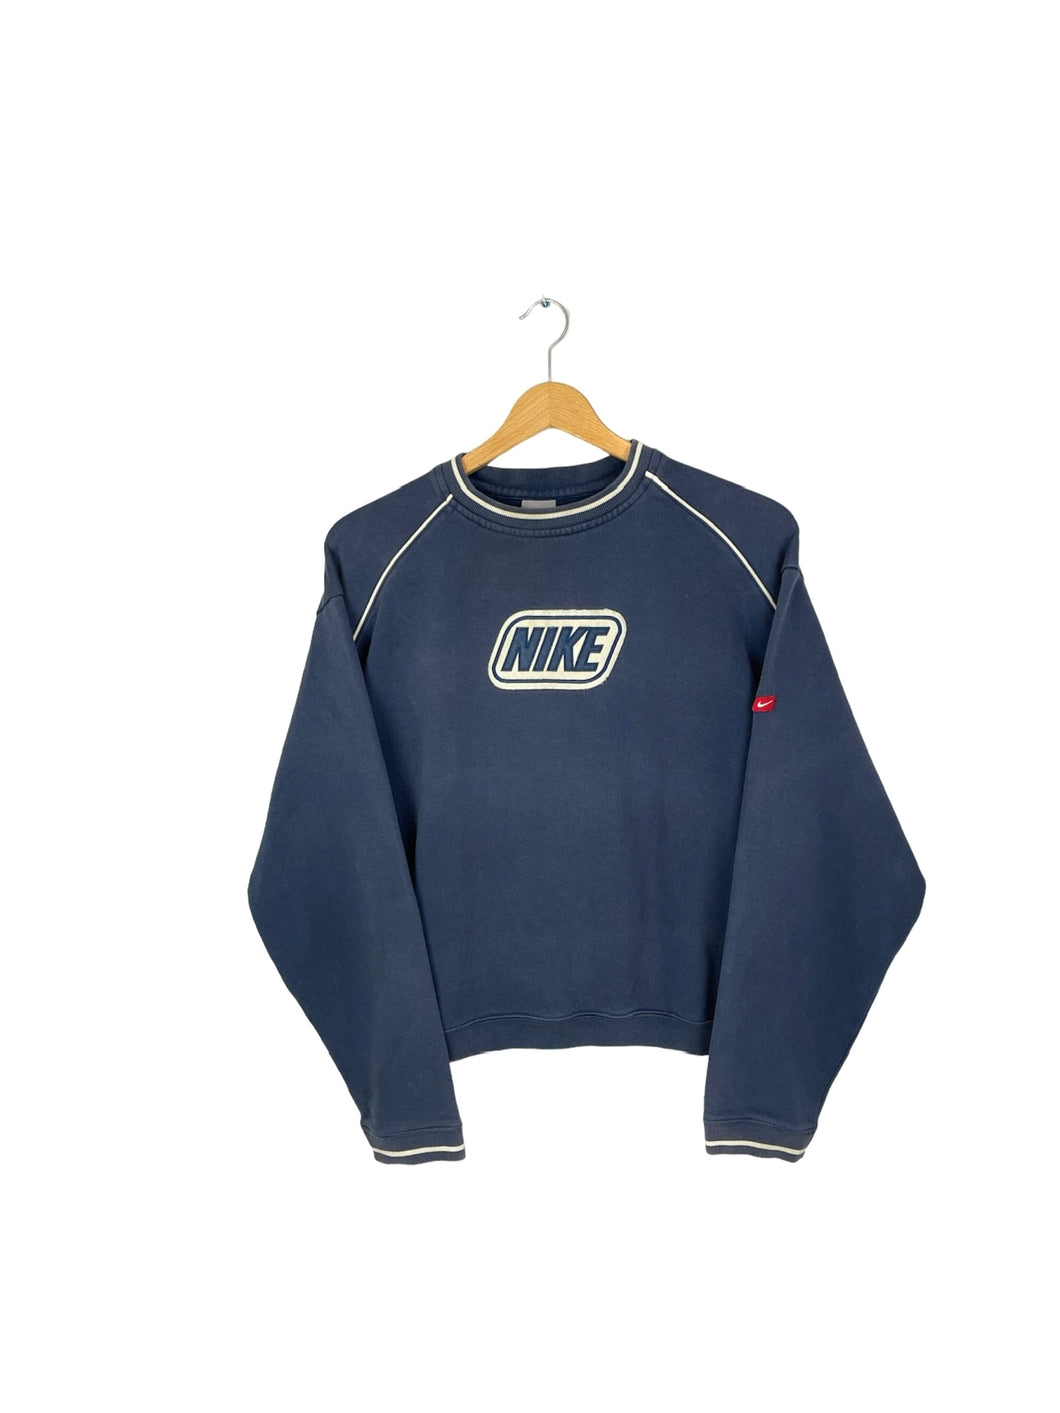 Nike Sweatshirt - XSmall